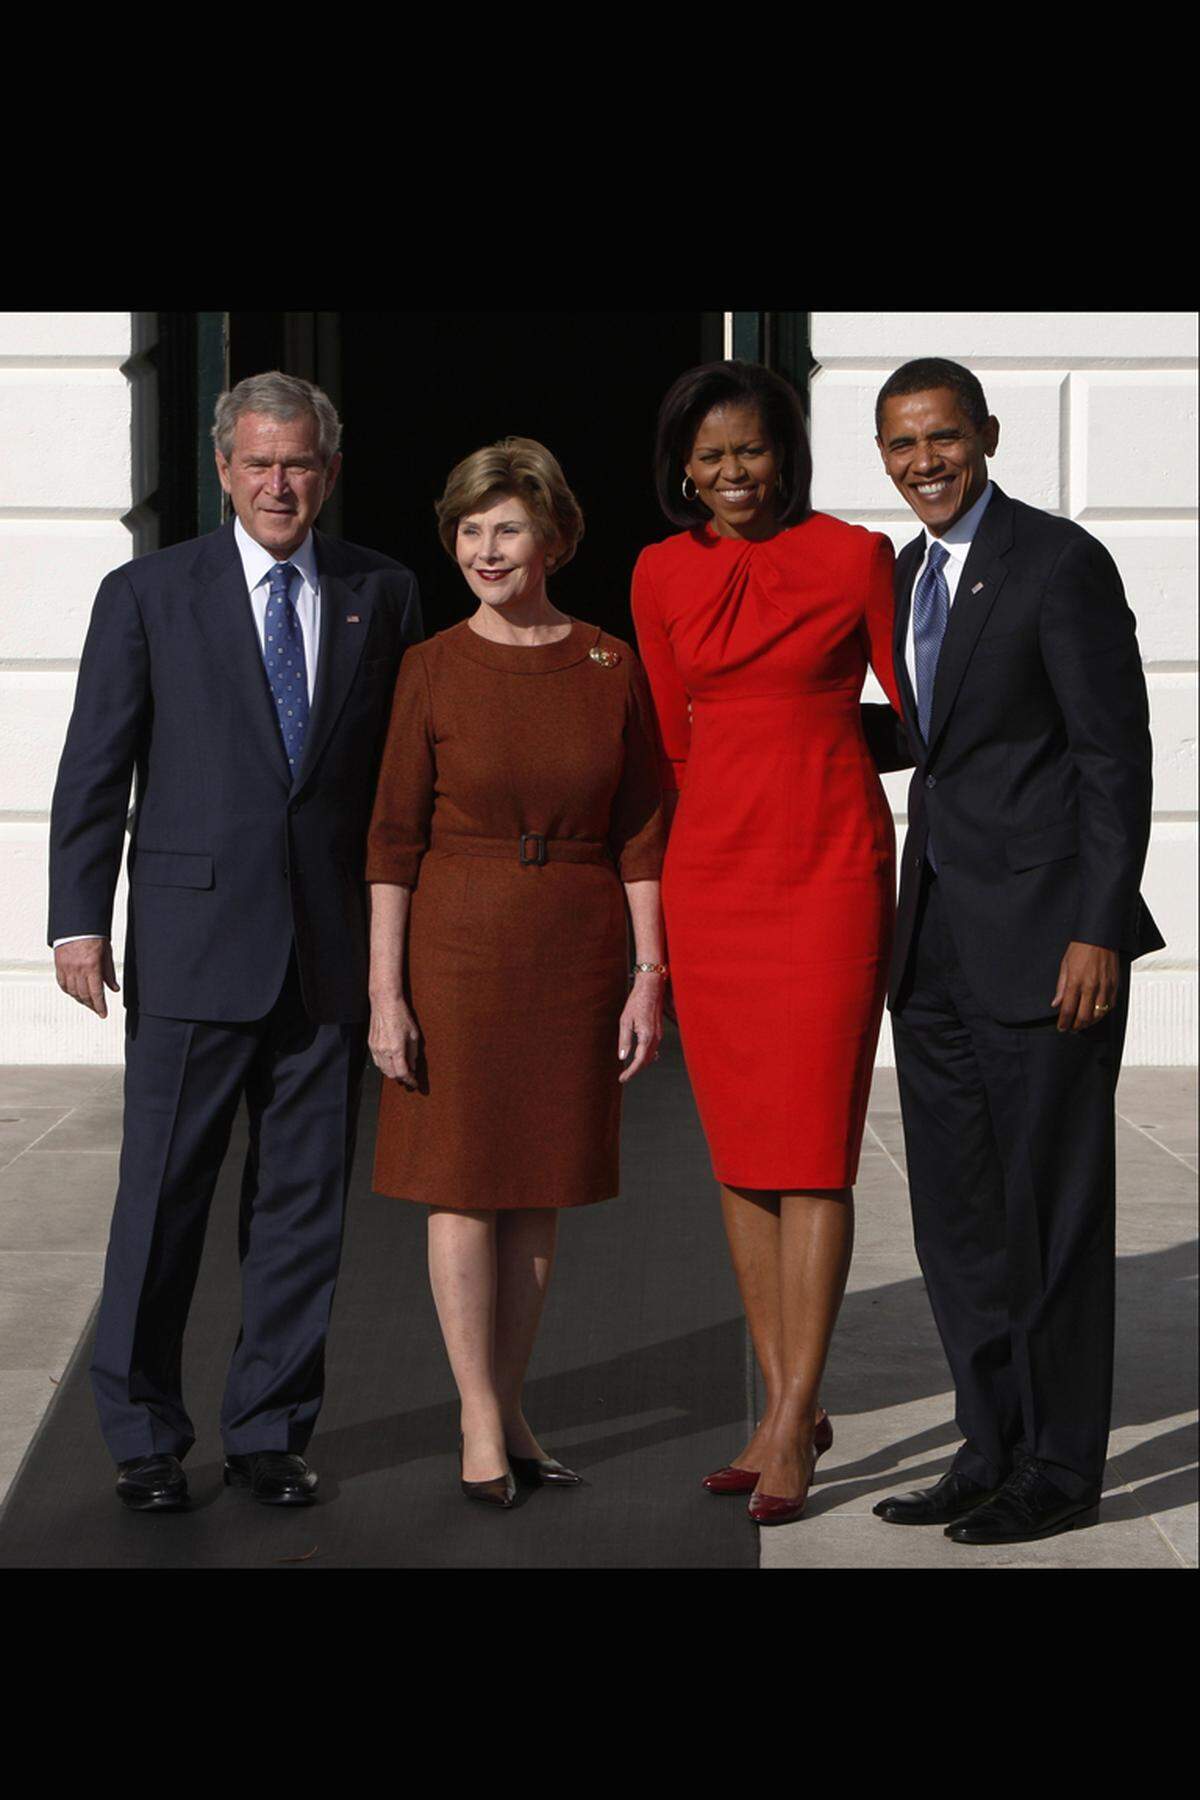 Da hatte die ehemalige First Lady Laura Bush keine Chance, der Modepokal ging wieder an Frau Obama und ihren Auftritt in Maria Pinto.